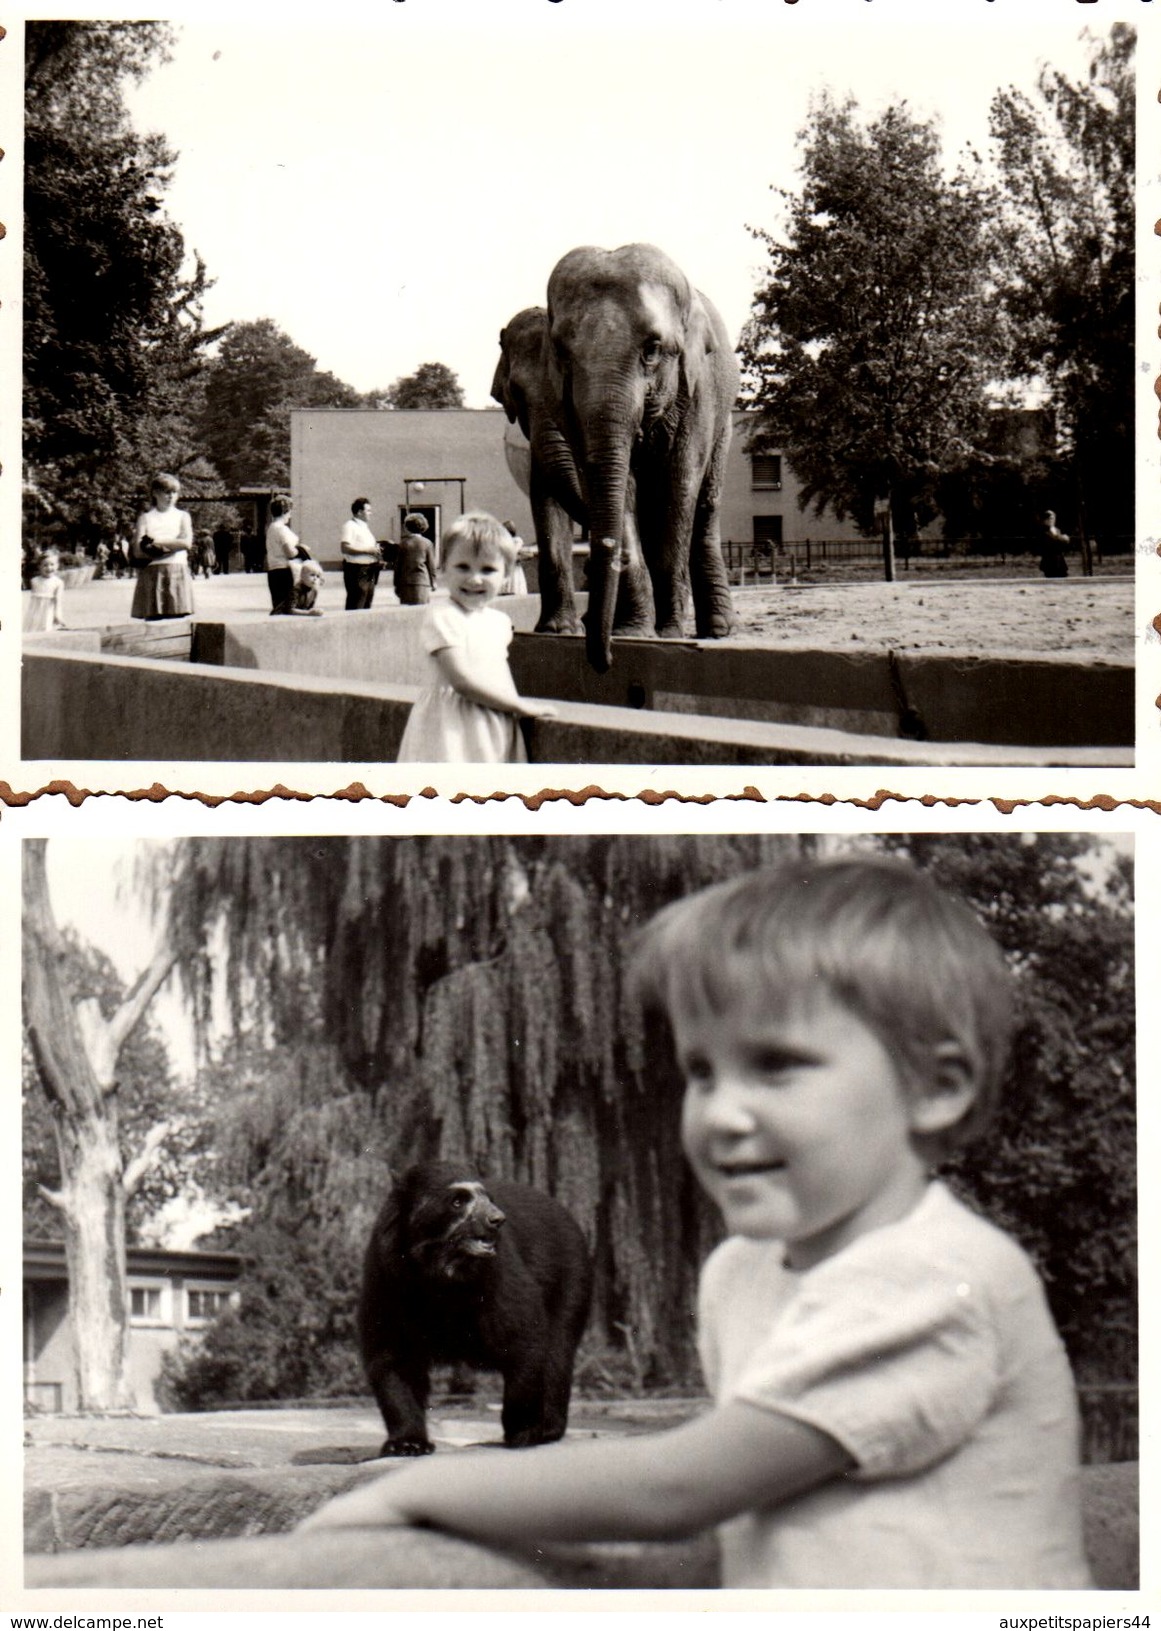 2 Photos Originales Zoo - Enfant En Ballade Au Zoo, Pause Photo Eléphant & Ours En 1970 - Personnes Anonymes